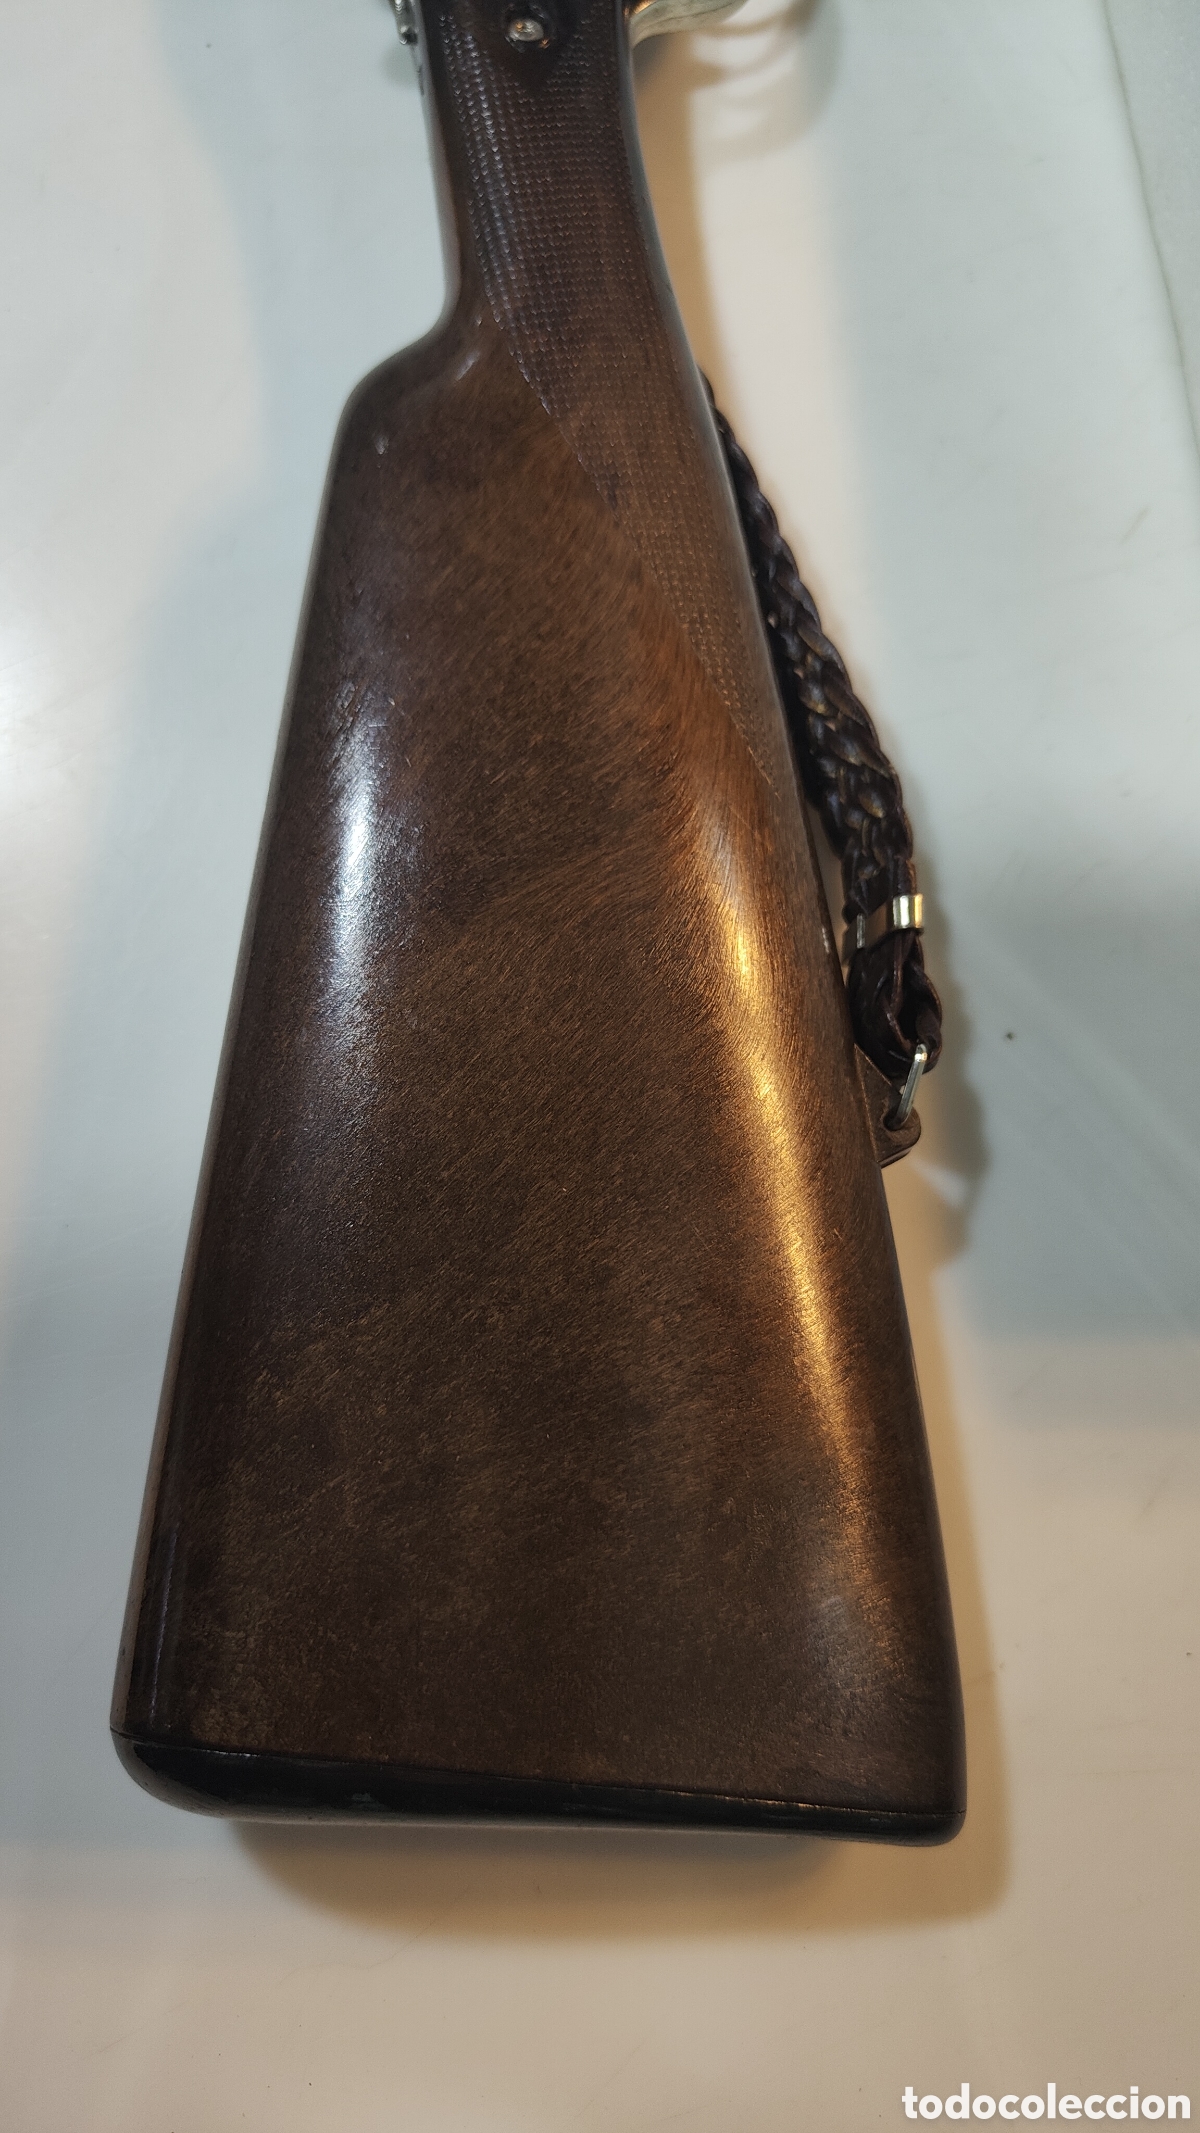 escopeta de caza beretta de fulminantes coibel - Compra venta en  todocoleccion